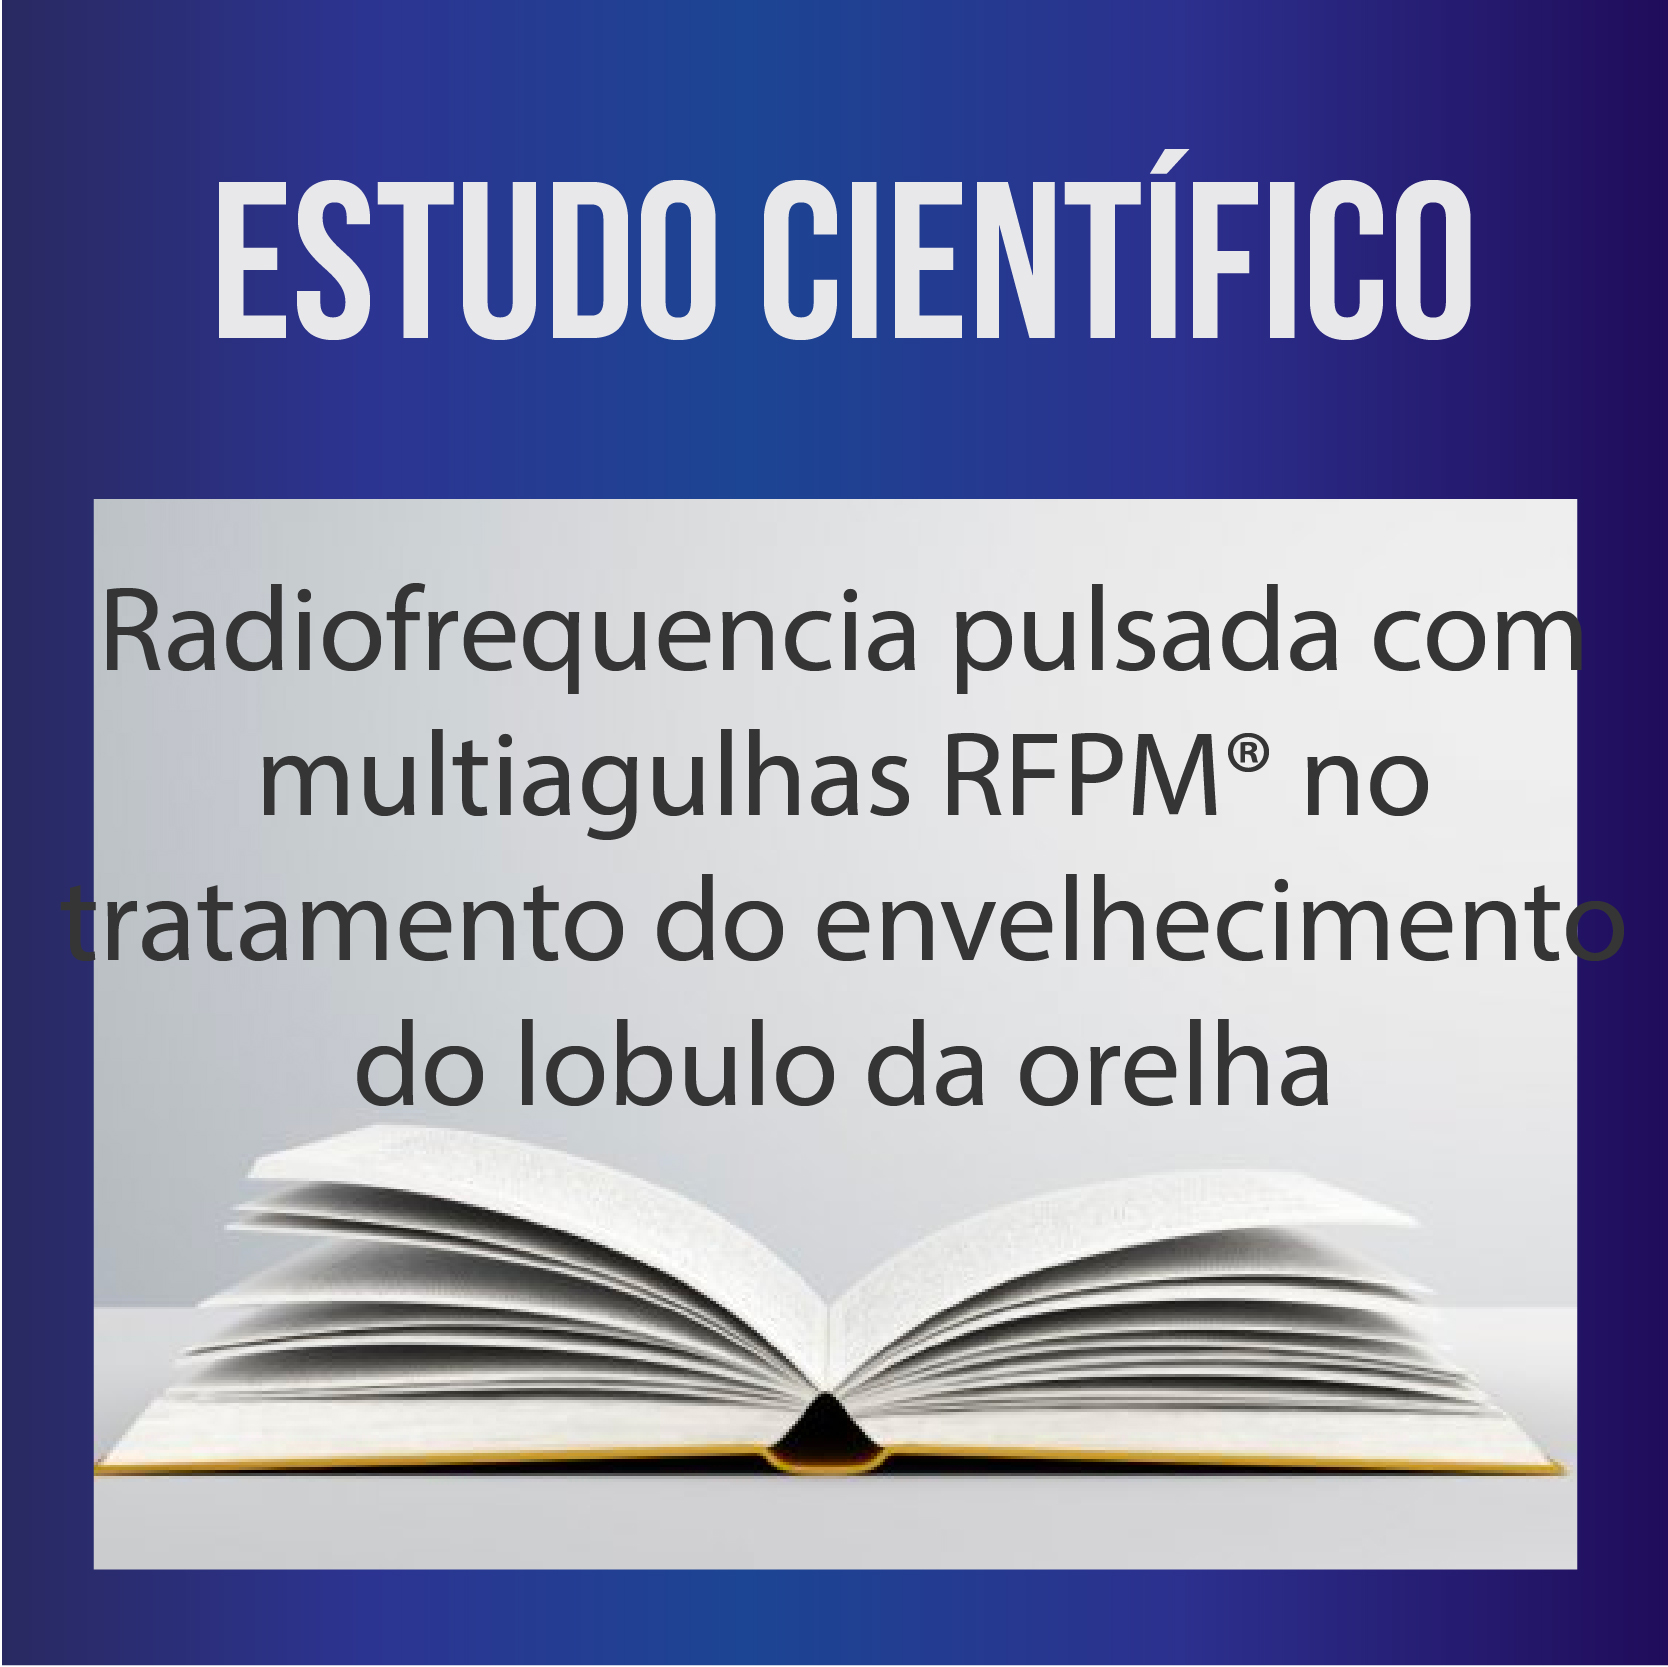 Radiofrequencia pulsada com multiagulhas RFPM no tratamento do envelhecimento do lobulo da orelha